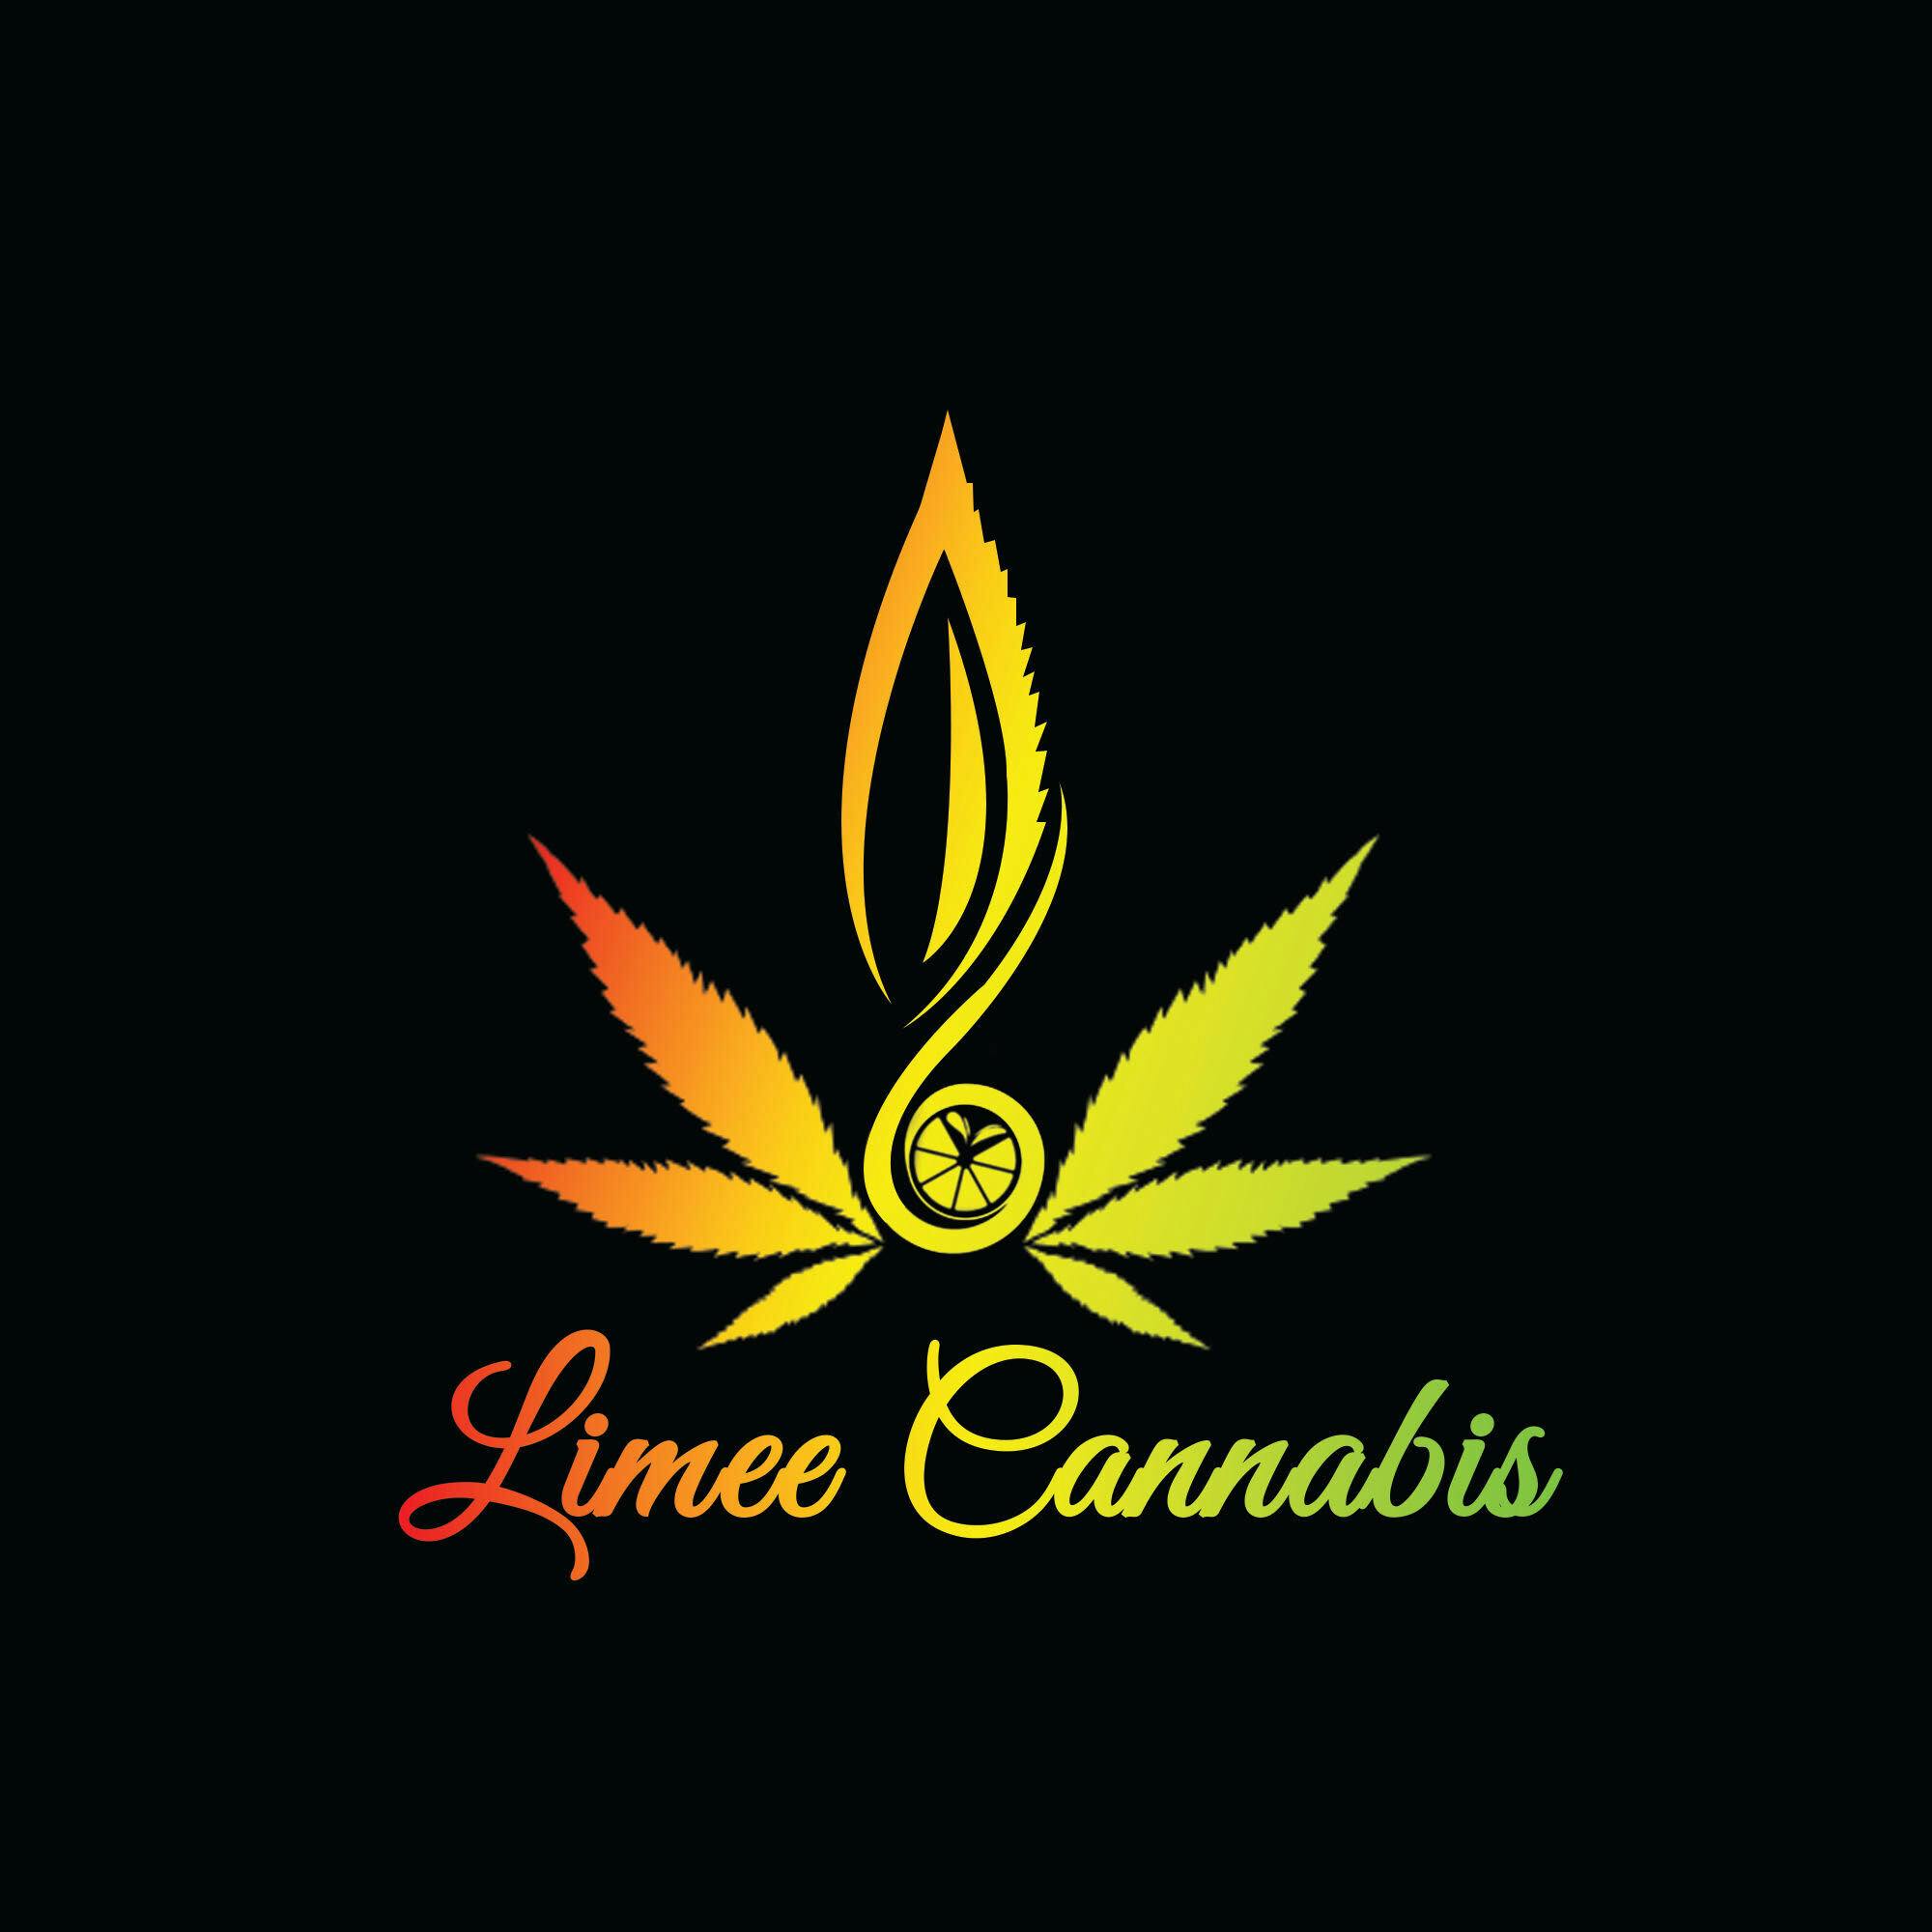 Limee Cannabis logo